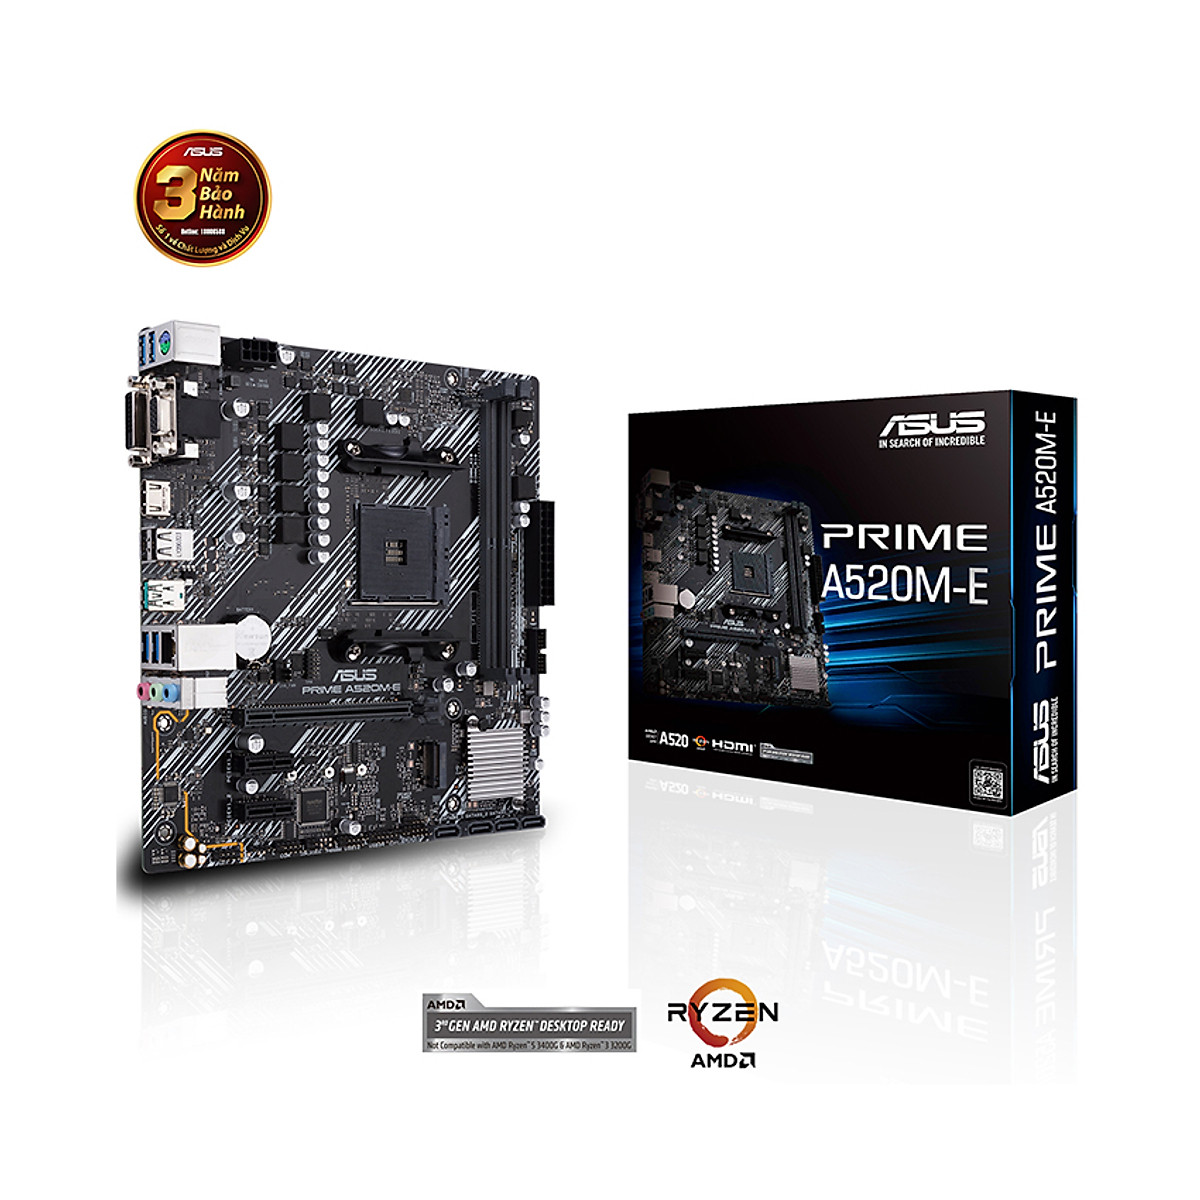 Bo mạch chủ Main Asus A520M-E hổ trợ CPU AMD - Hàng Chính Hãng